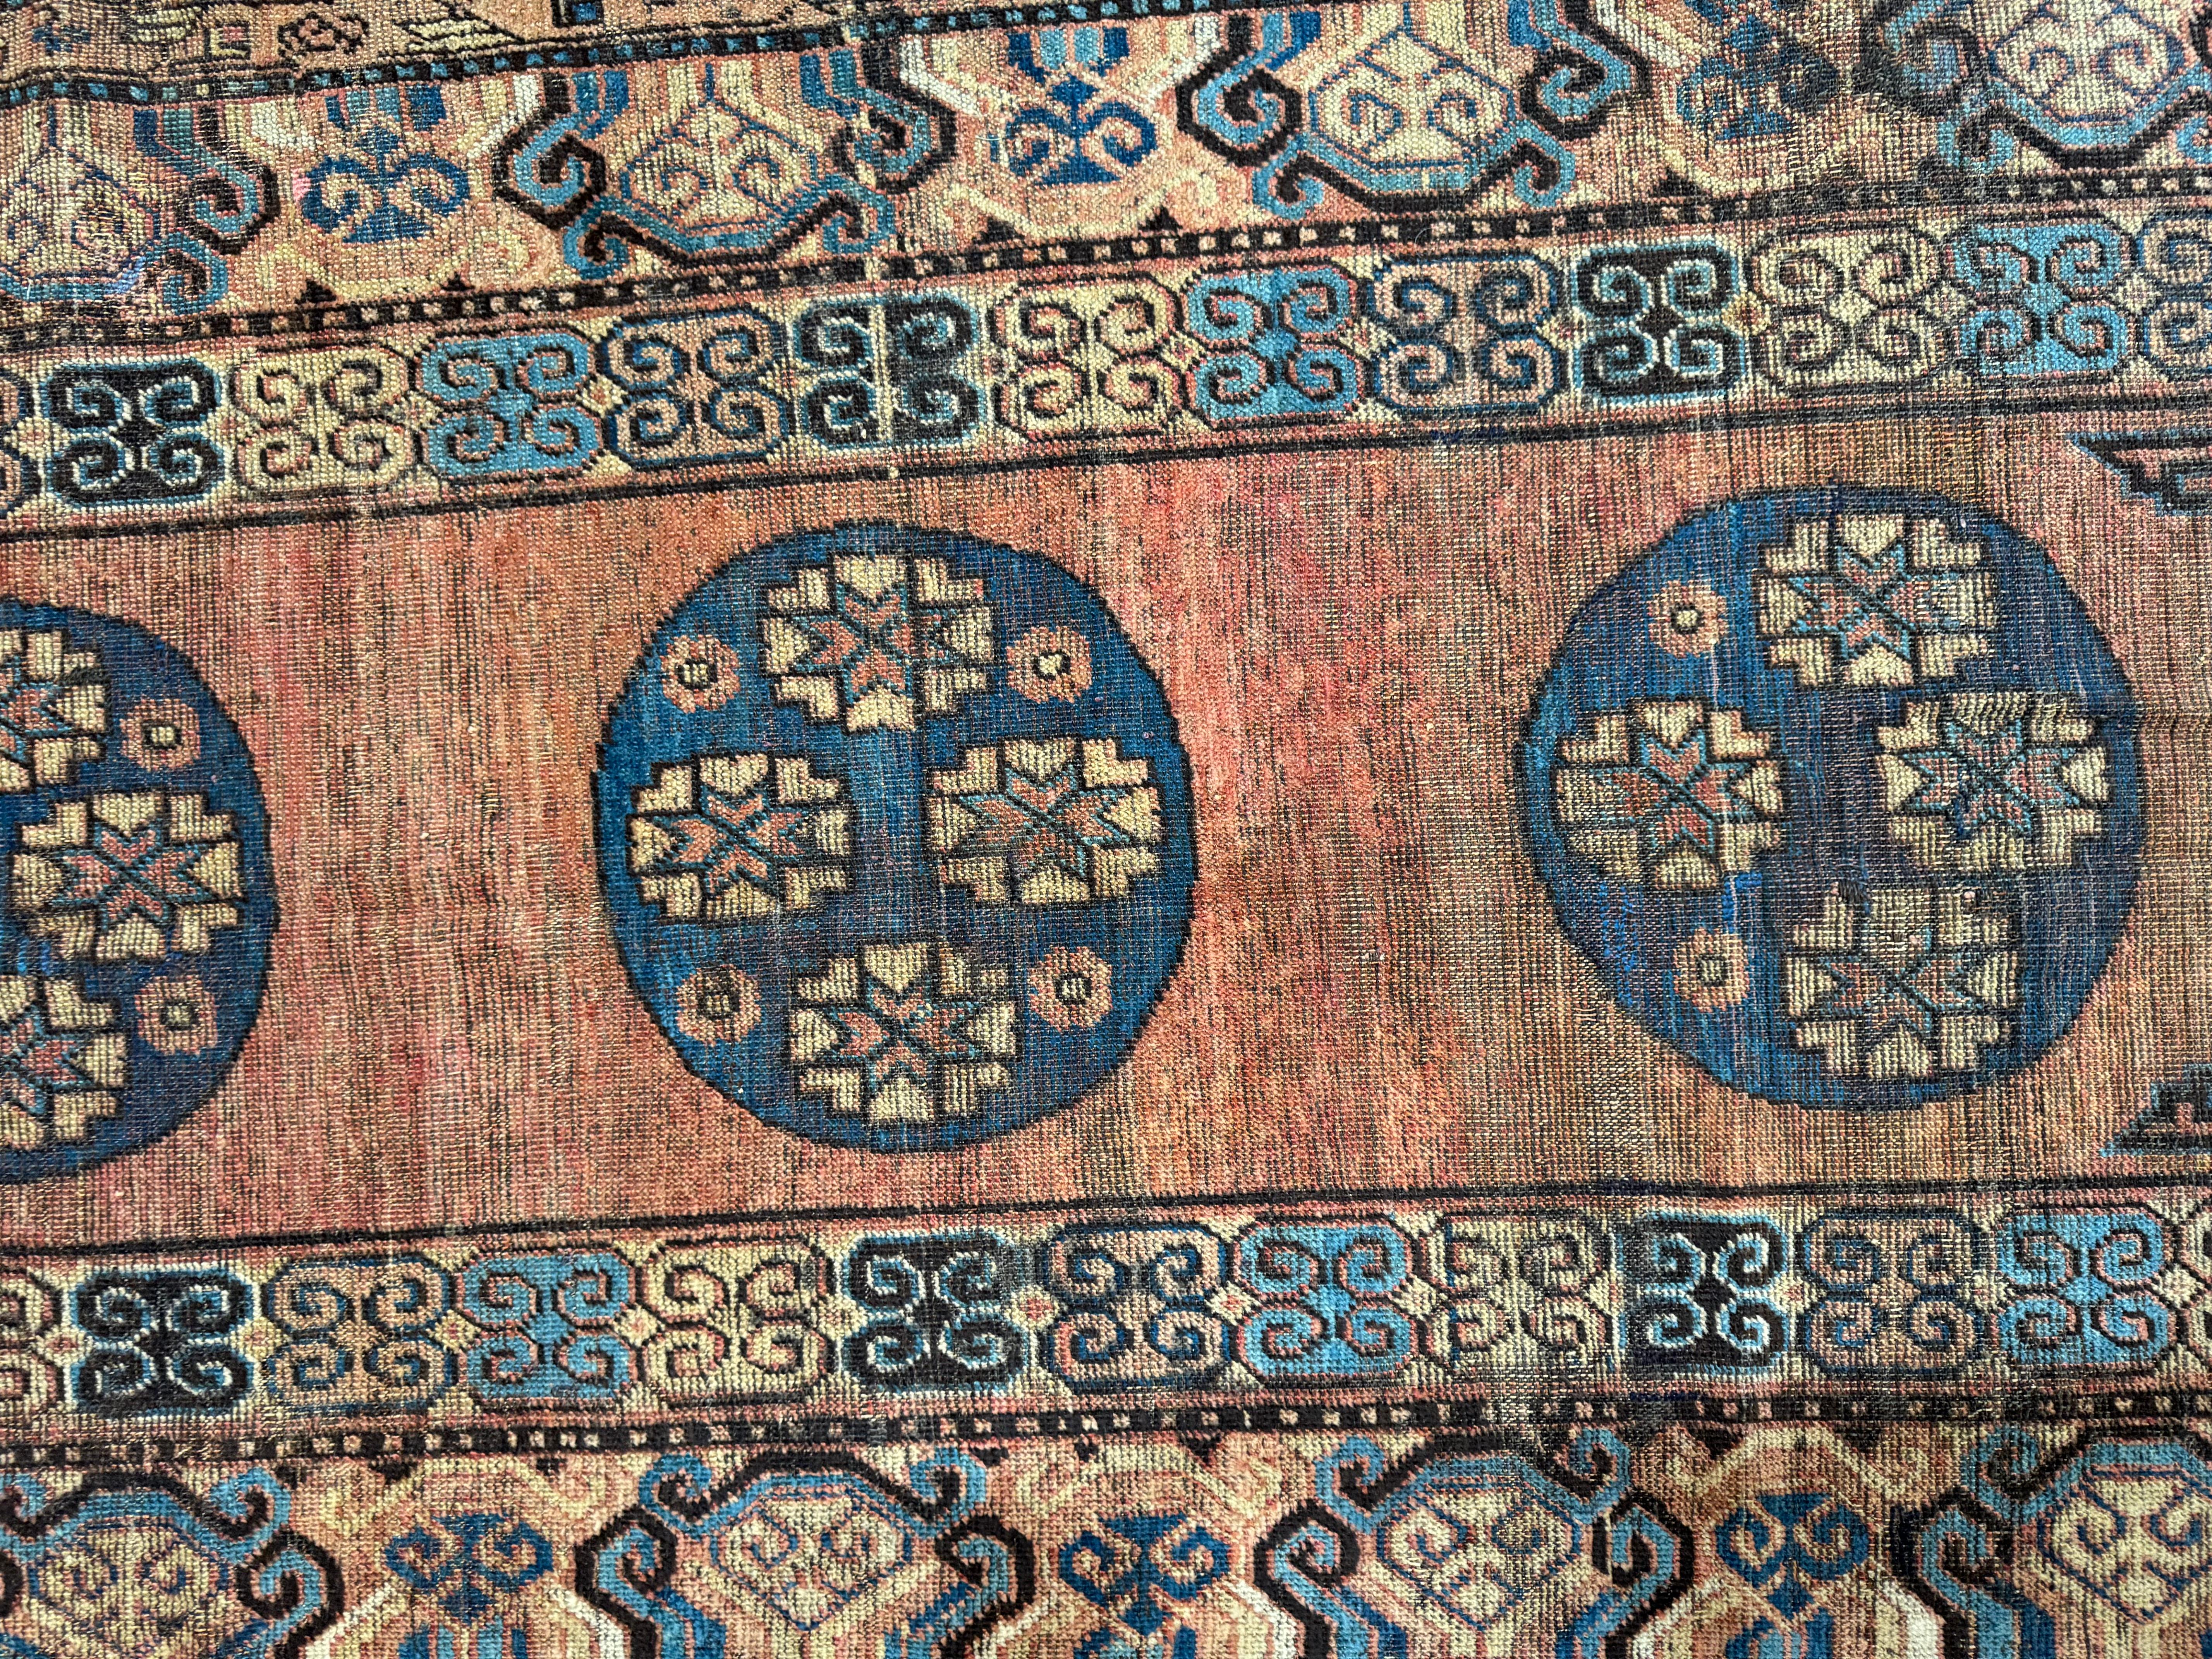 Erbe verfeinert: 19th Century Samarkand Rug, 8.6' x 3.9' - Verleihen Sie Ihrem Zuhause mit diesem exquisiten antiken Teppich zeitlosen Charme und amerikanisches Flair. Er ist eine Mischung aus Geschichte und Eleganz und verleiht jedem Raum einen